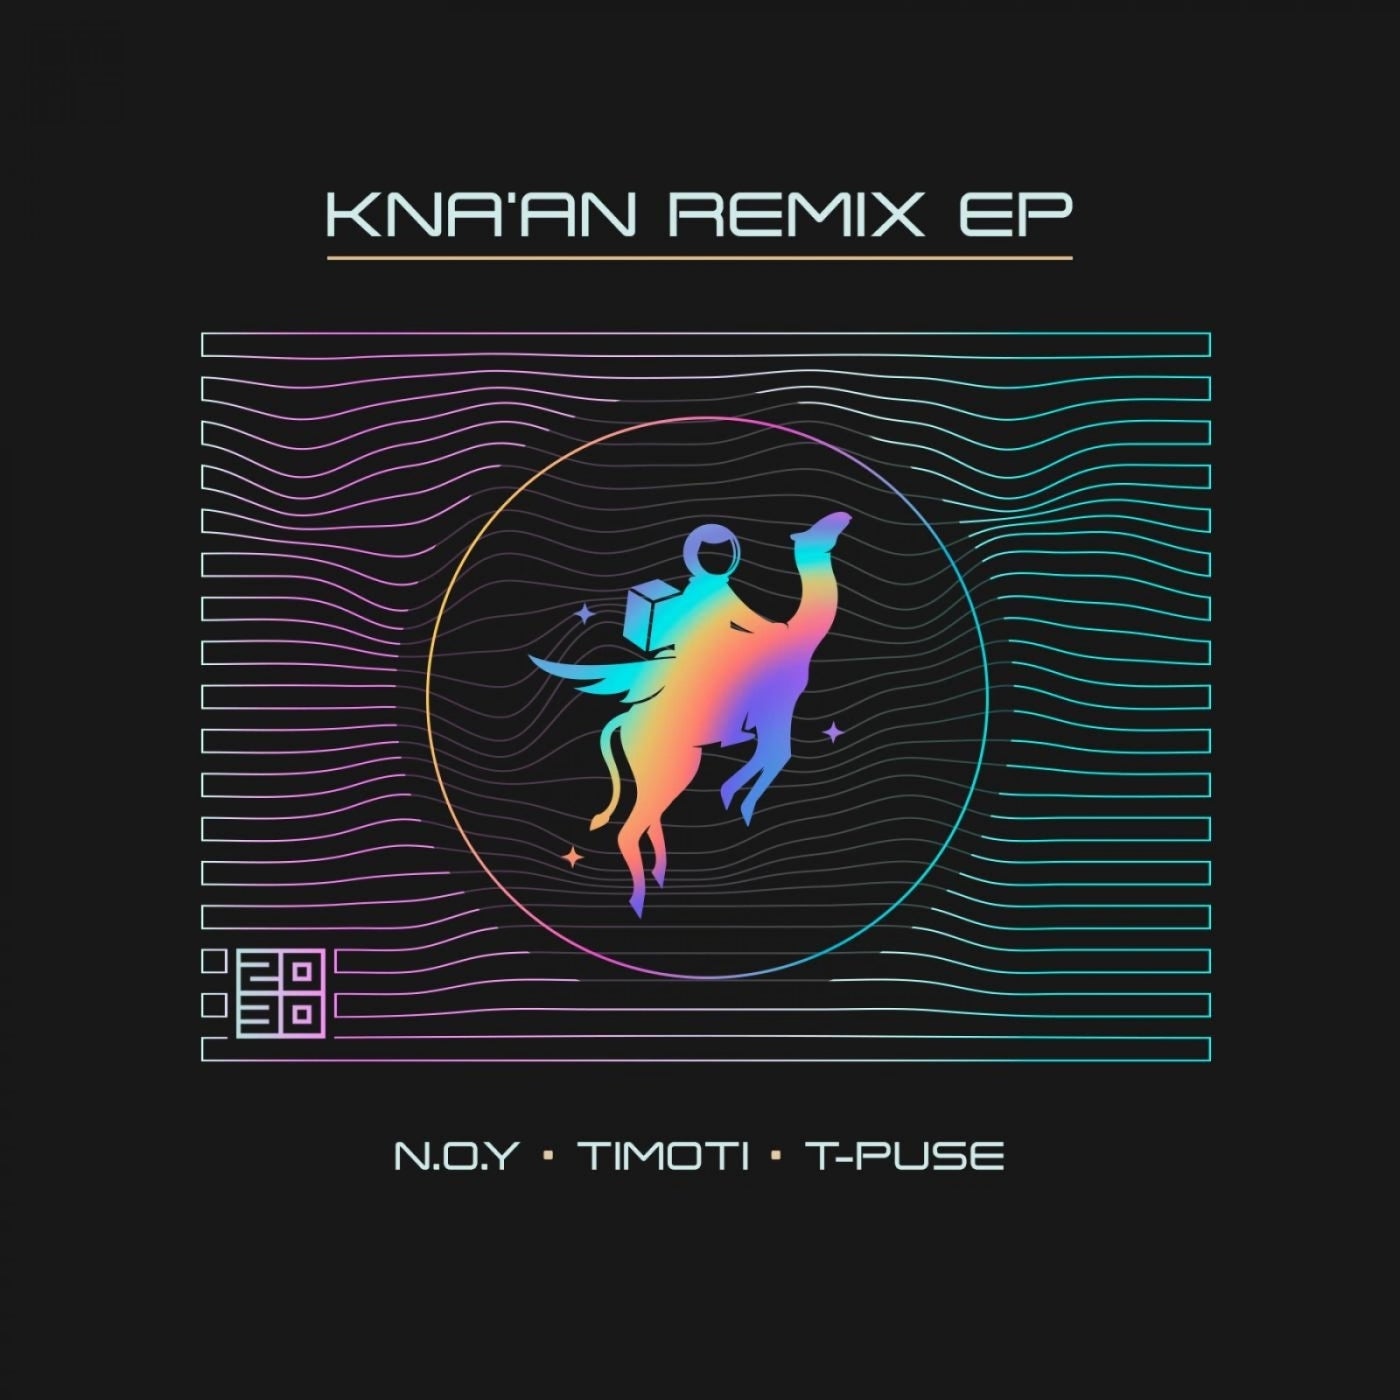 Kna'an Remix